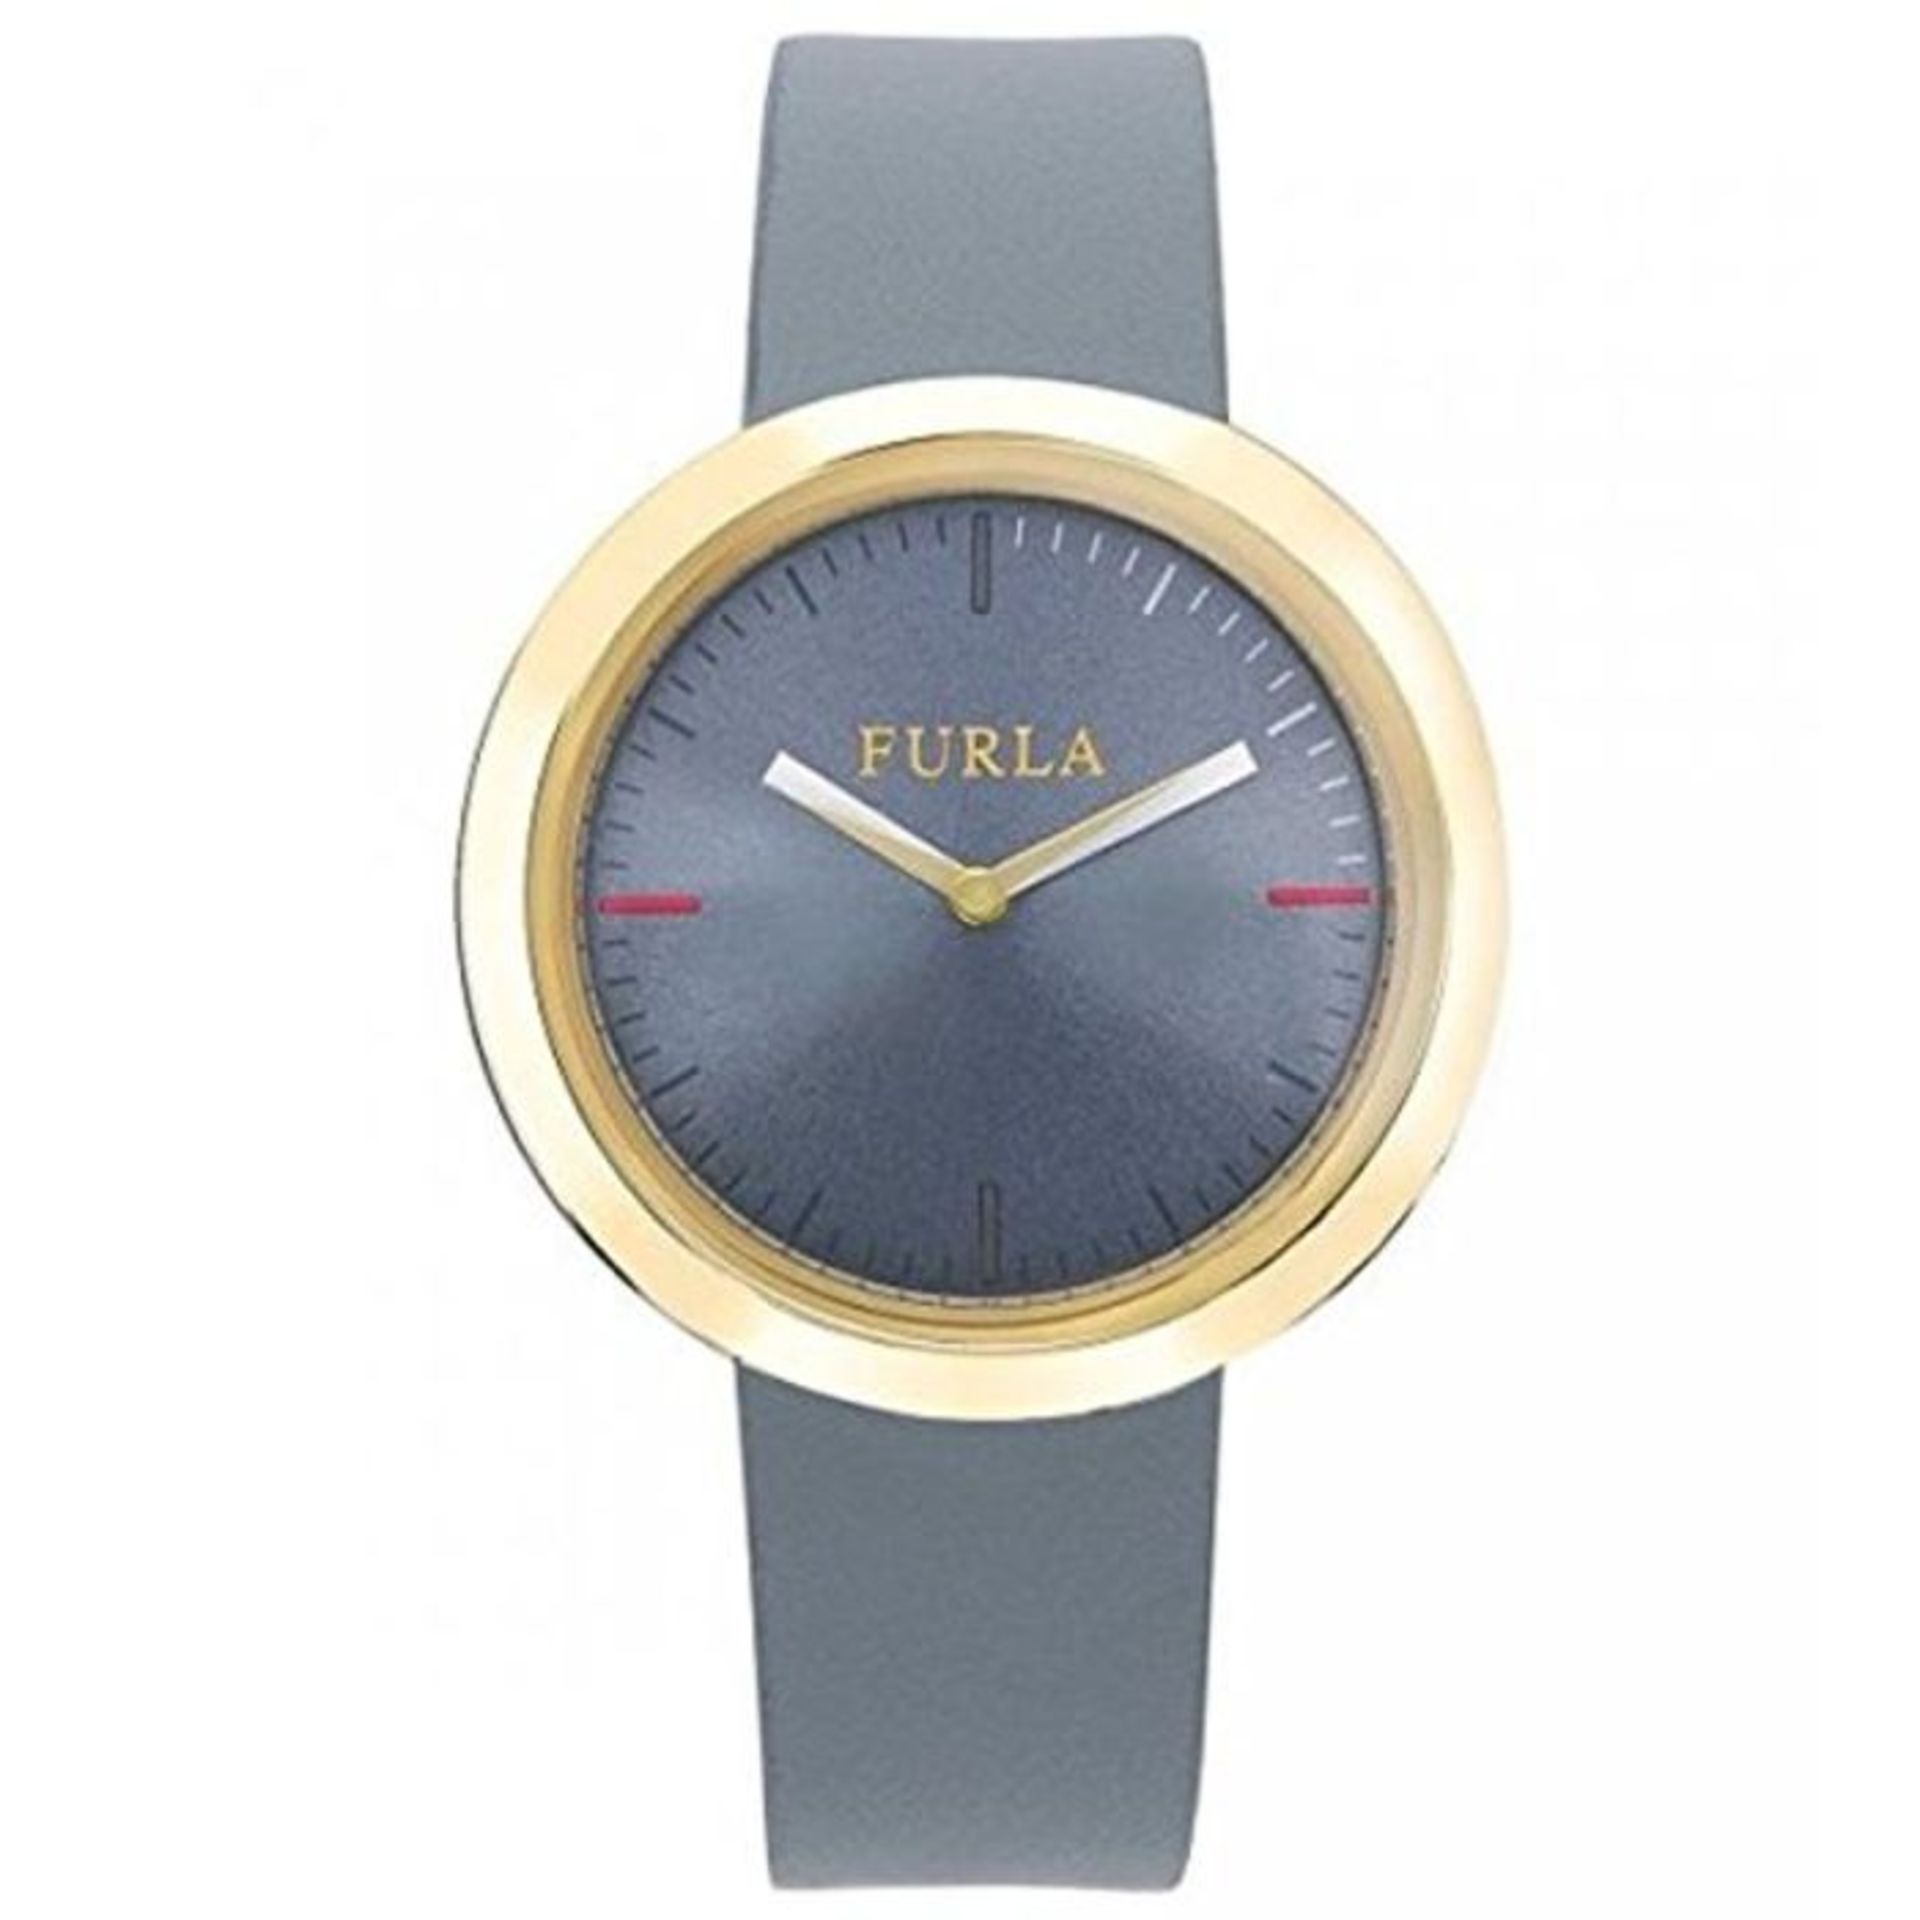 RRP £100.00 FURLA Damen Datum klassisch Quarz Uhr mit Leder Armband R4251103501